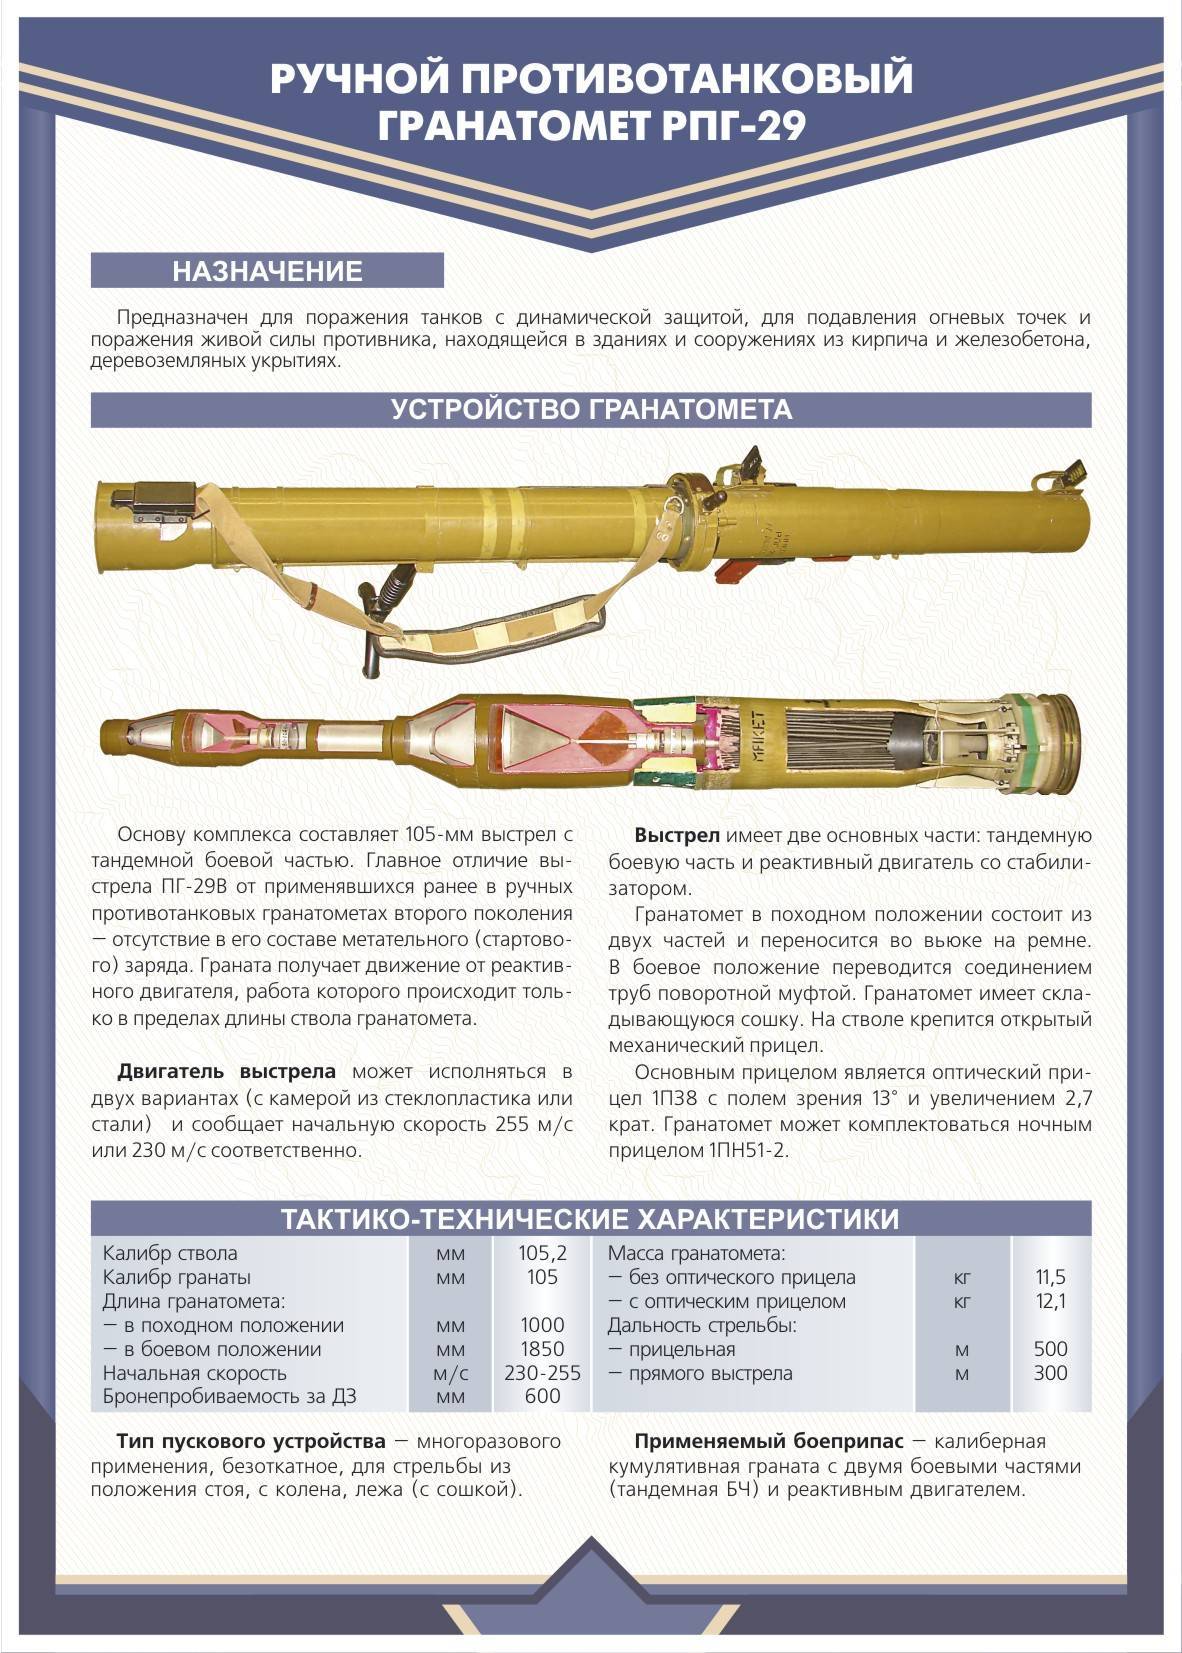 Рпг-29 «вампир» — ручной противотанковый гранатомет